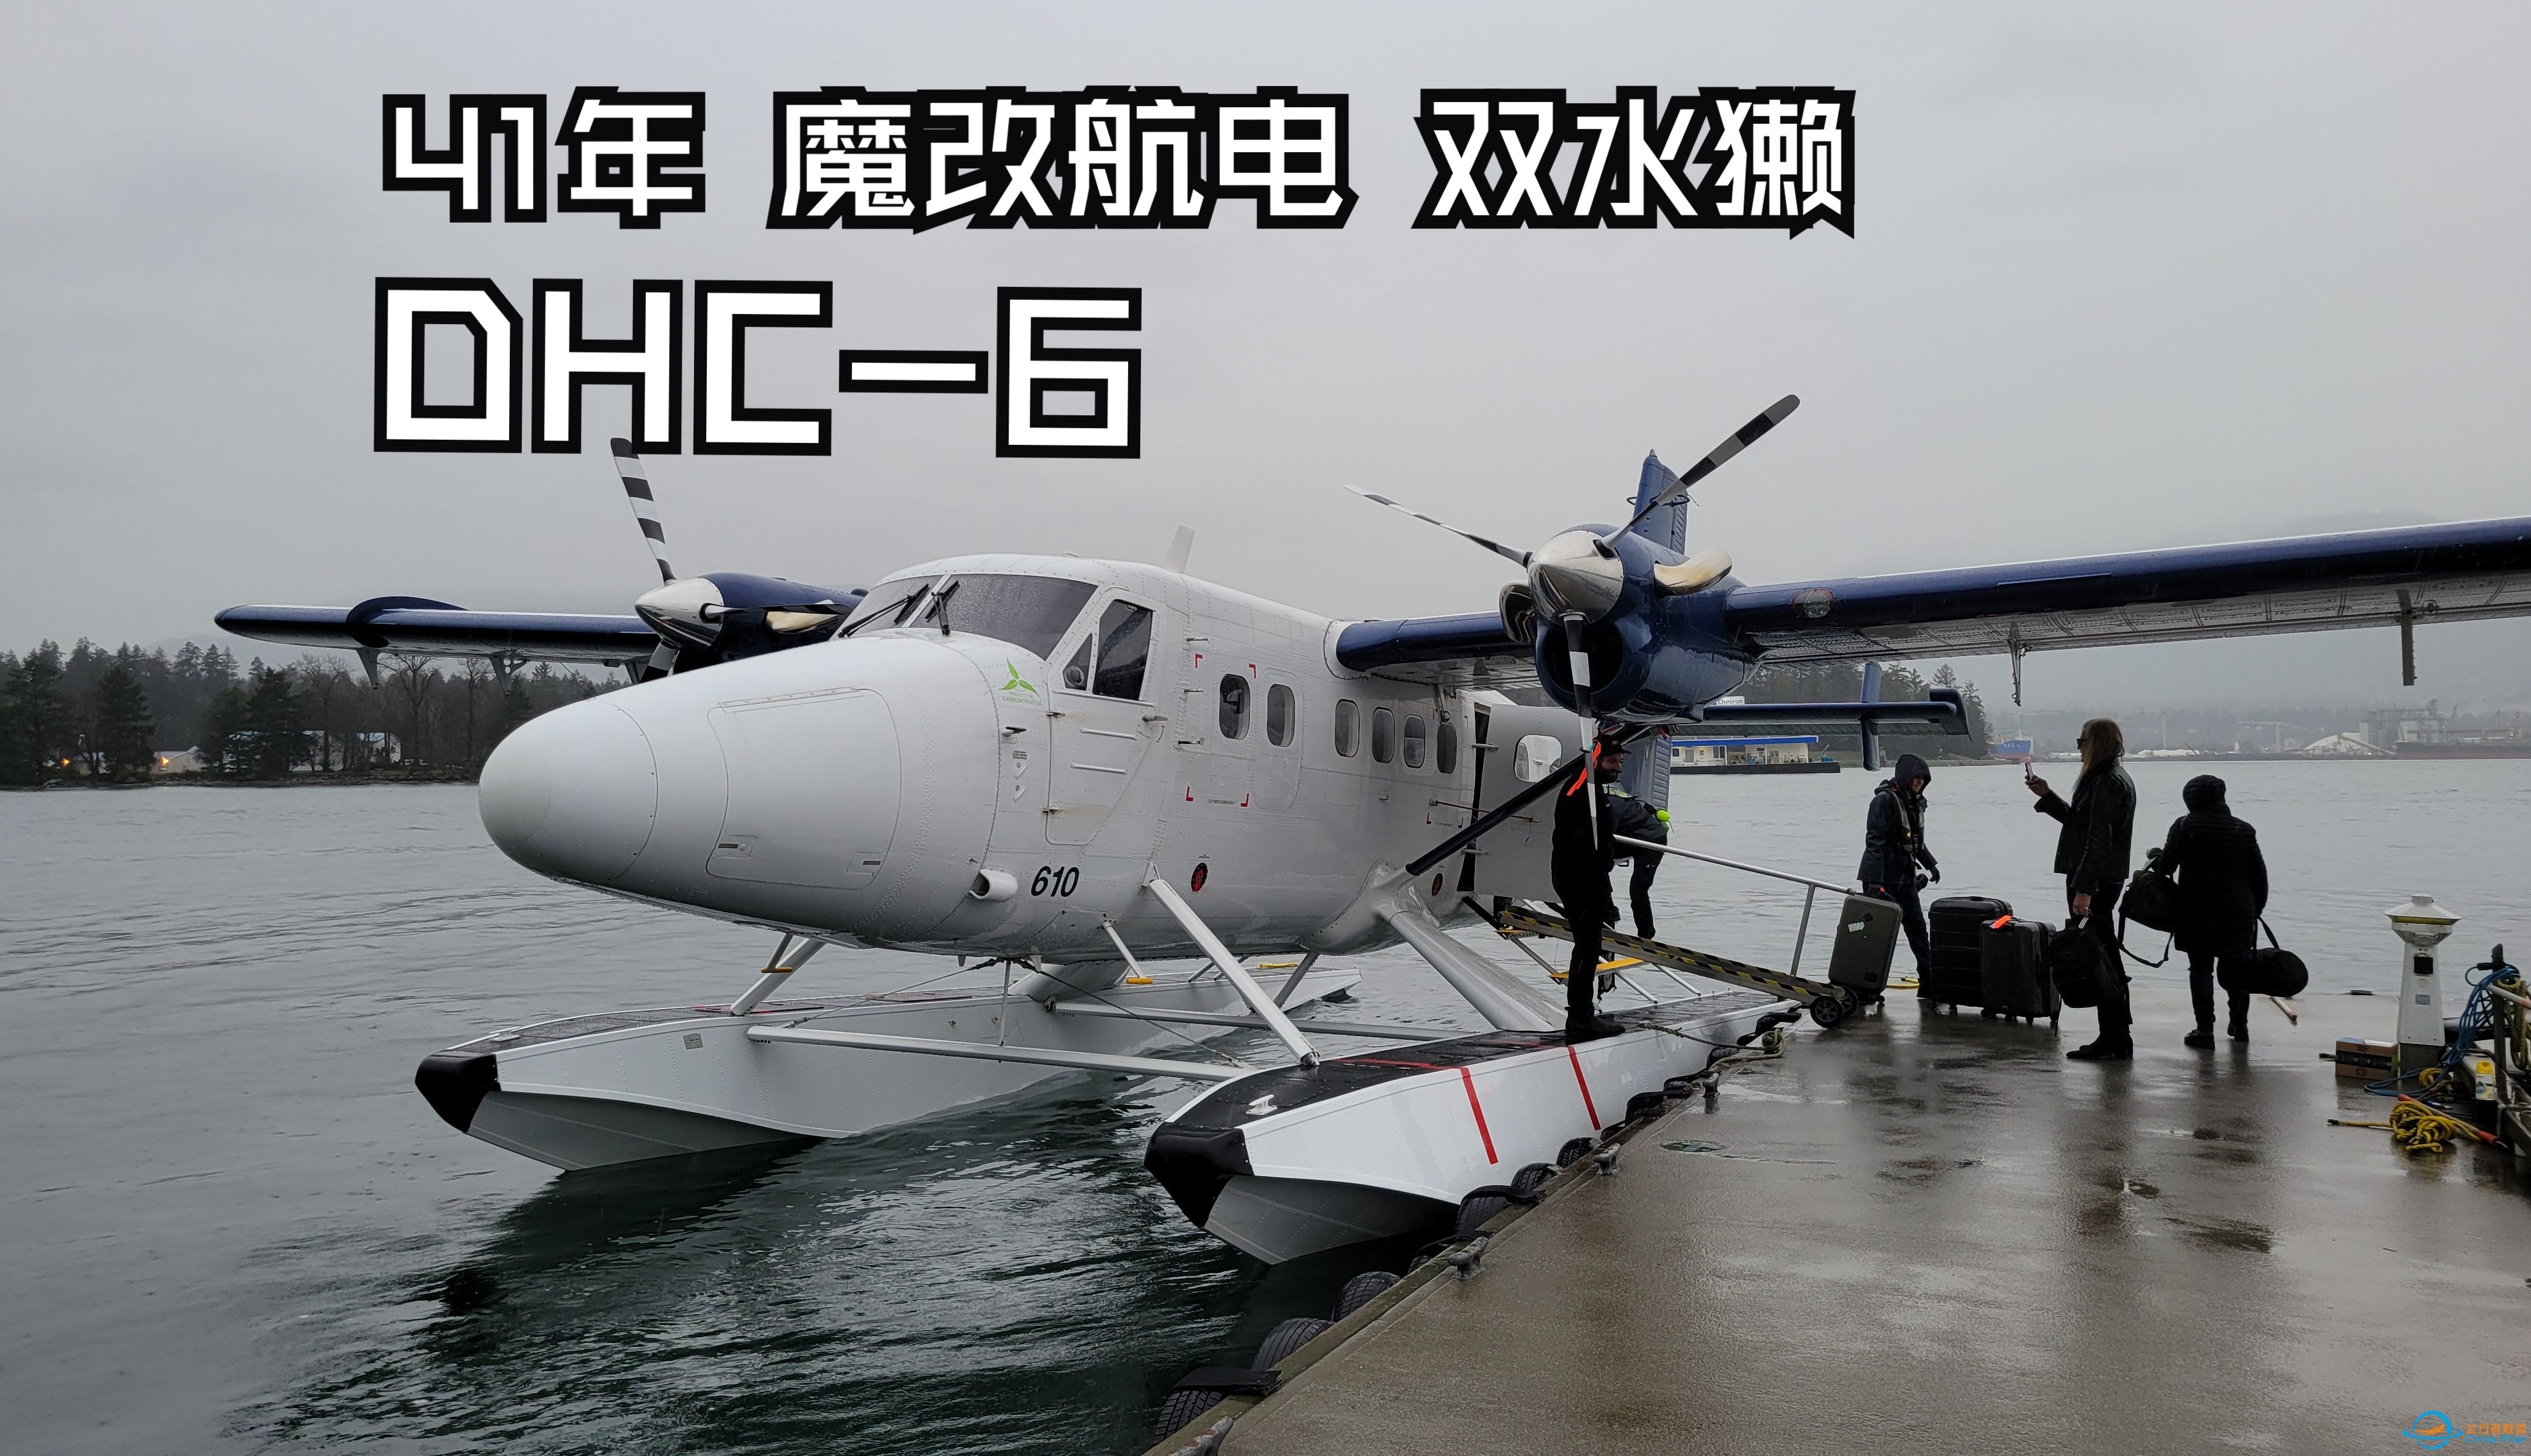 【飞行游记】41年的魔改老飞机？海港航空DHC-6双水獭水上飞机飞行体验-4252 